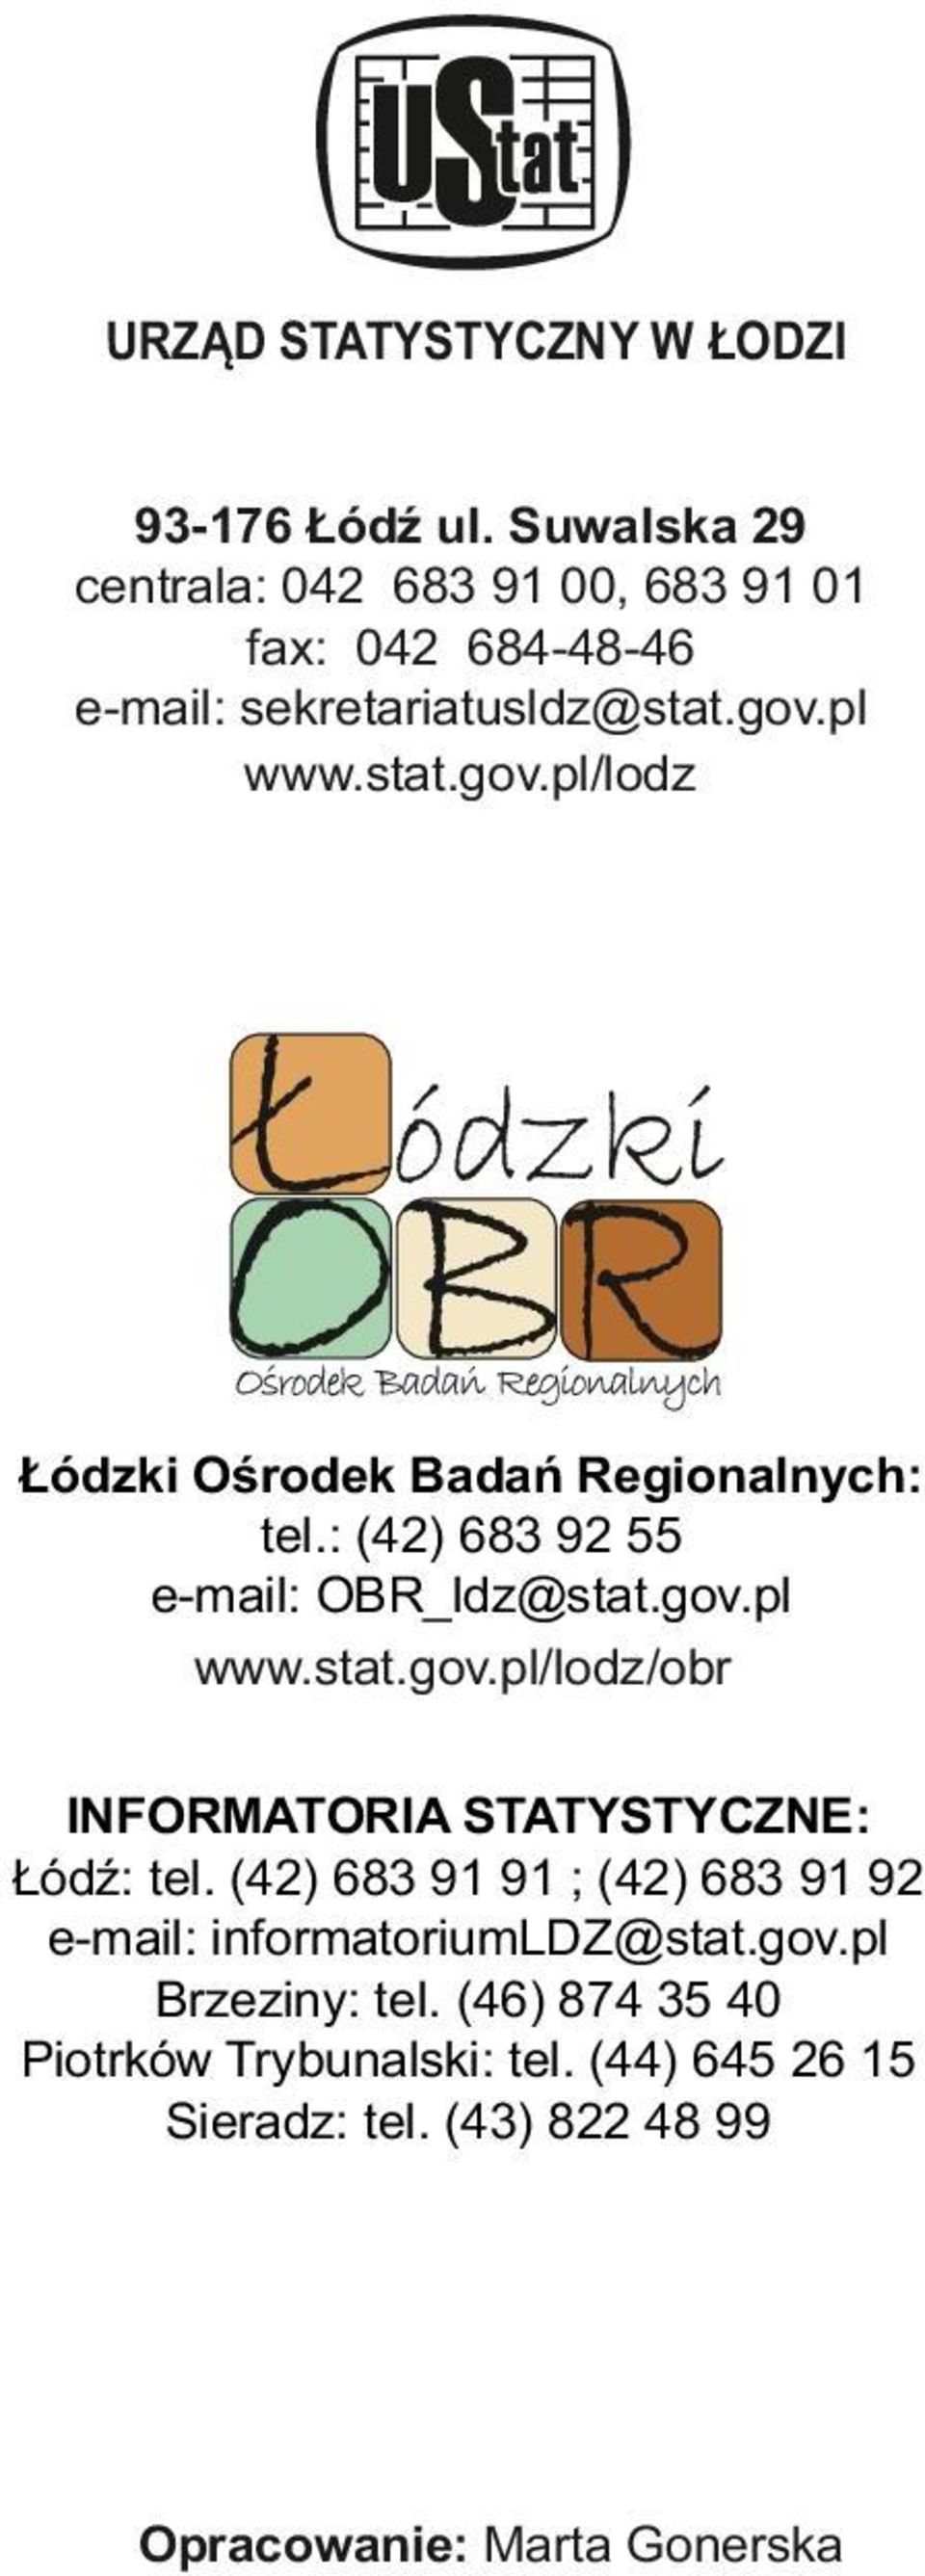 pl www.stat.gov.pl/lodz Łódzki Ośrodek Badań Regionalnych: tel.: (42) 683 92 55 e-mail: OBR_ldz@stat.gov.pl www.stat.gov.pl/lodz/obr INFORMATORIA STATYSTYCZNE: Łódź: tel.